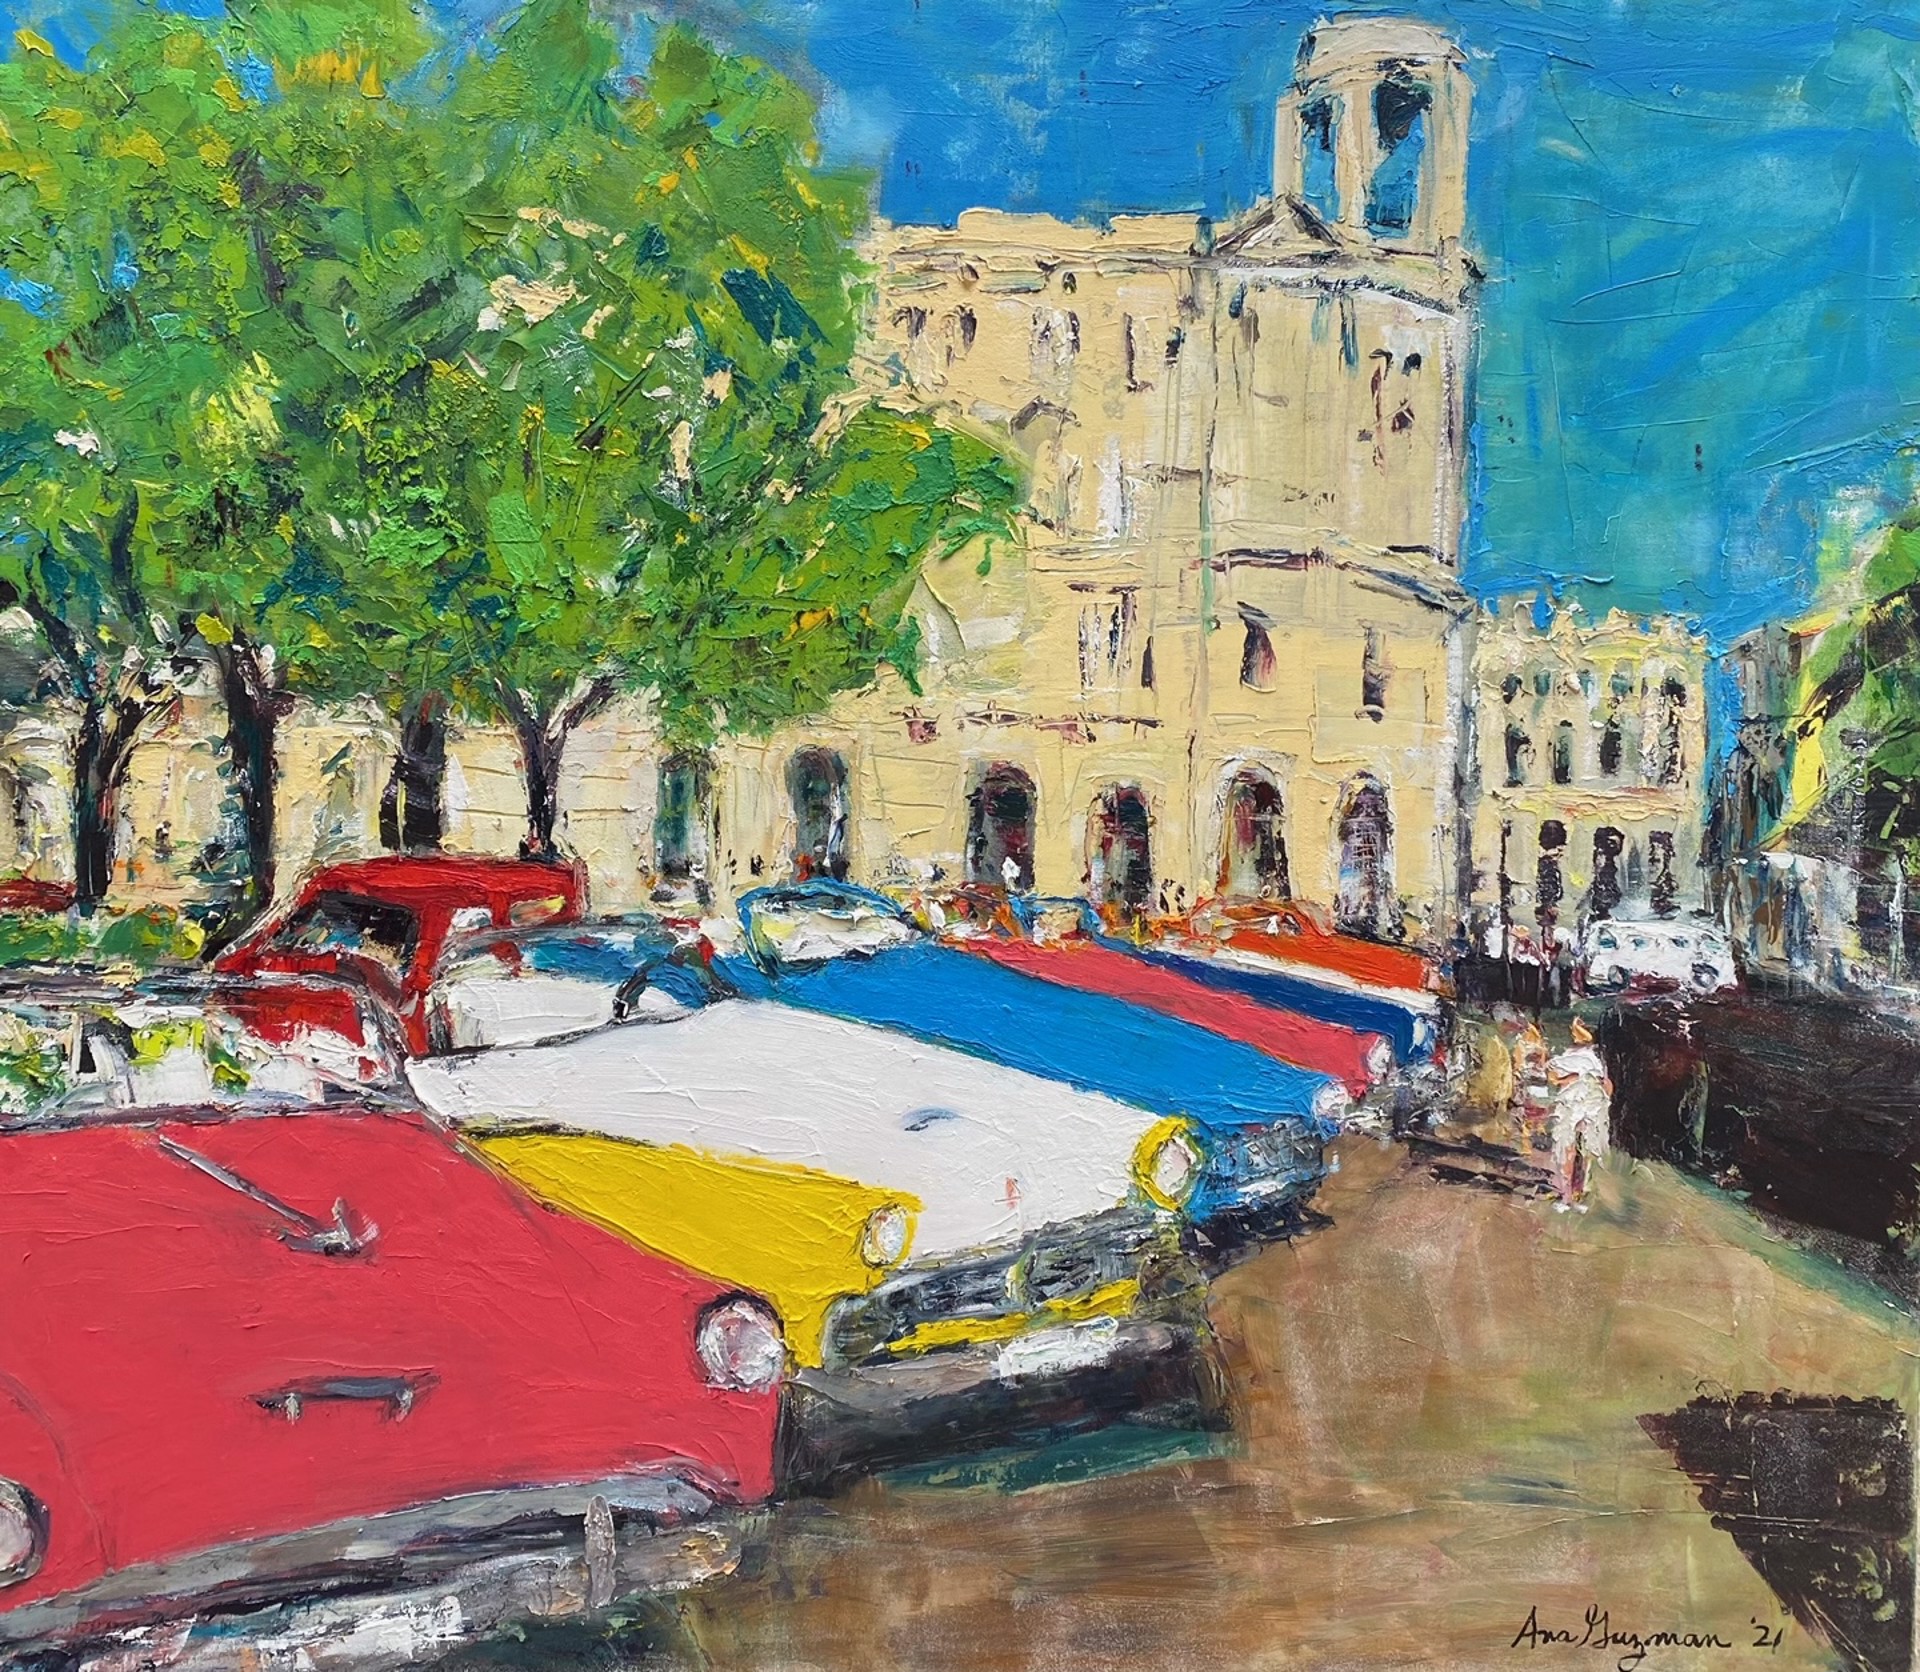 La Vida Cuba - Linea de Carros by Ana Guzman